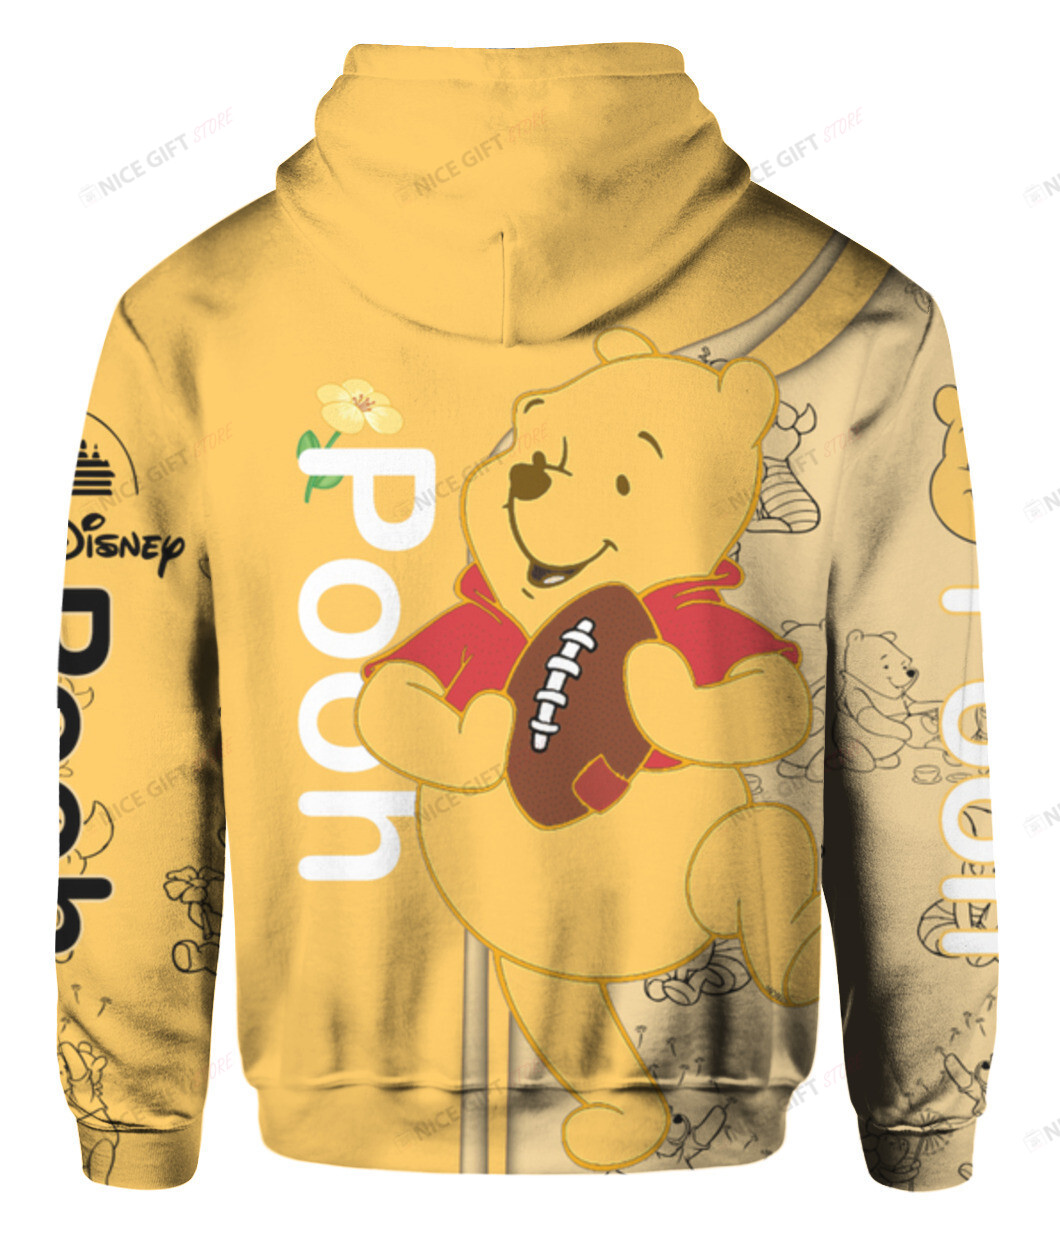 Pooh Hoodie 3D 3HO-N0G4 - HomeFavo